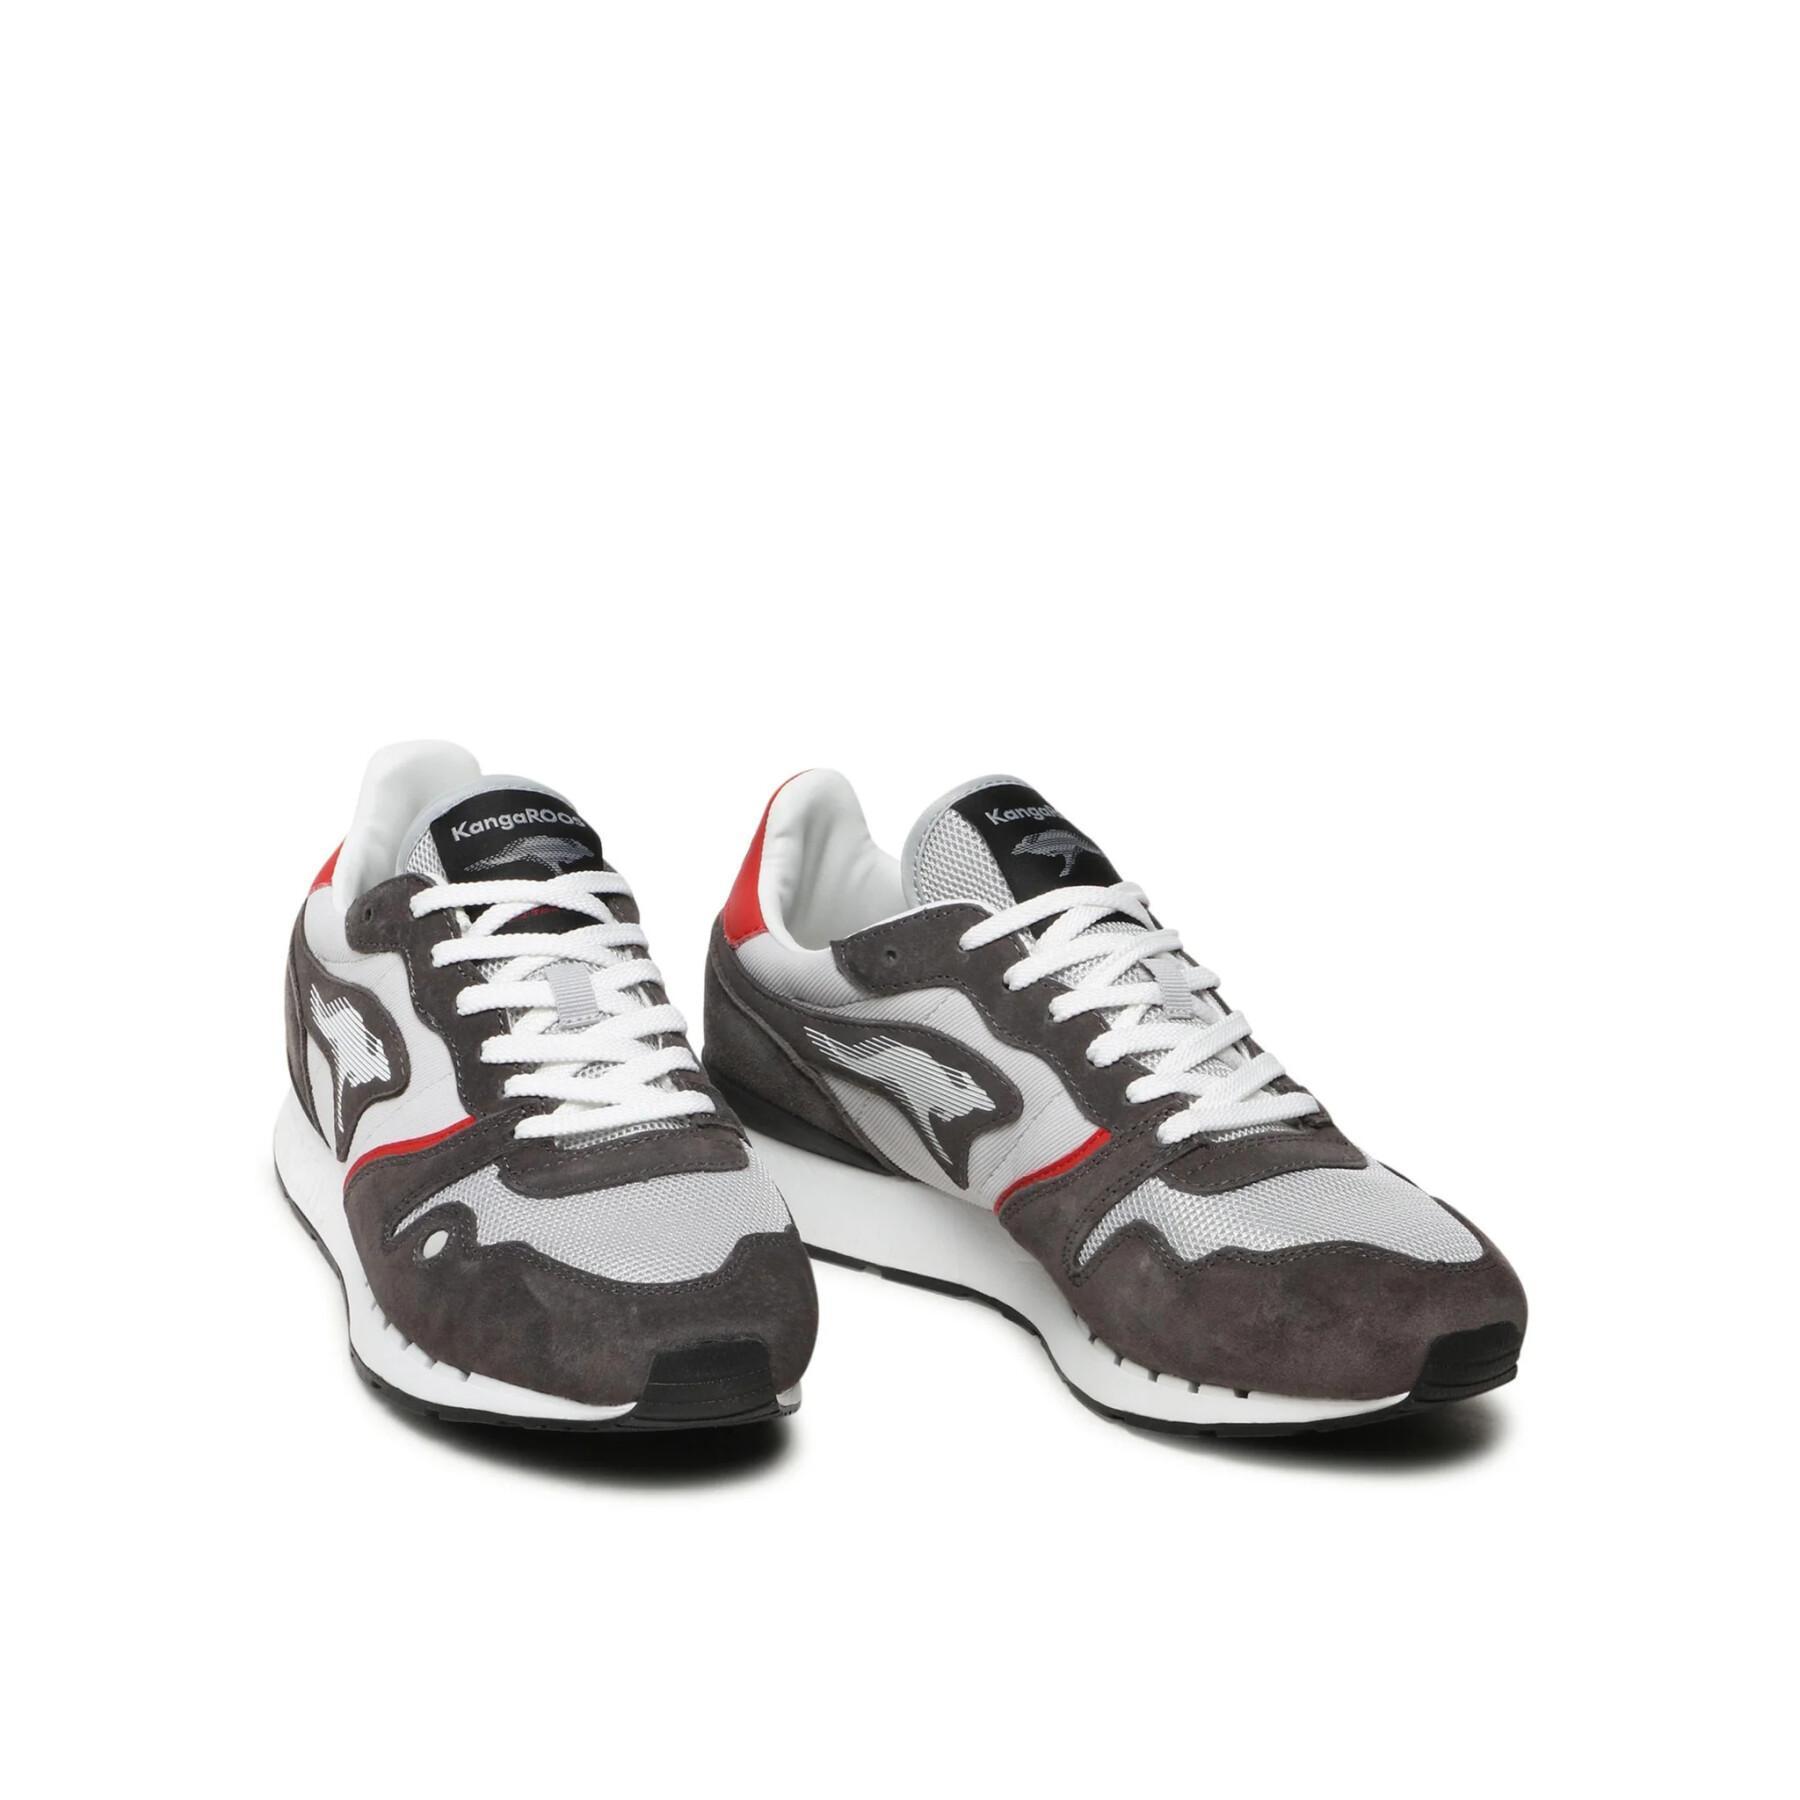 Sneakers KangaROOS Coil RX